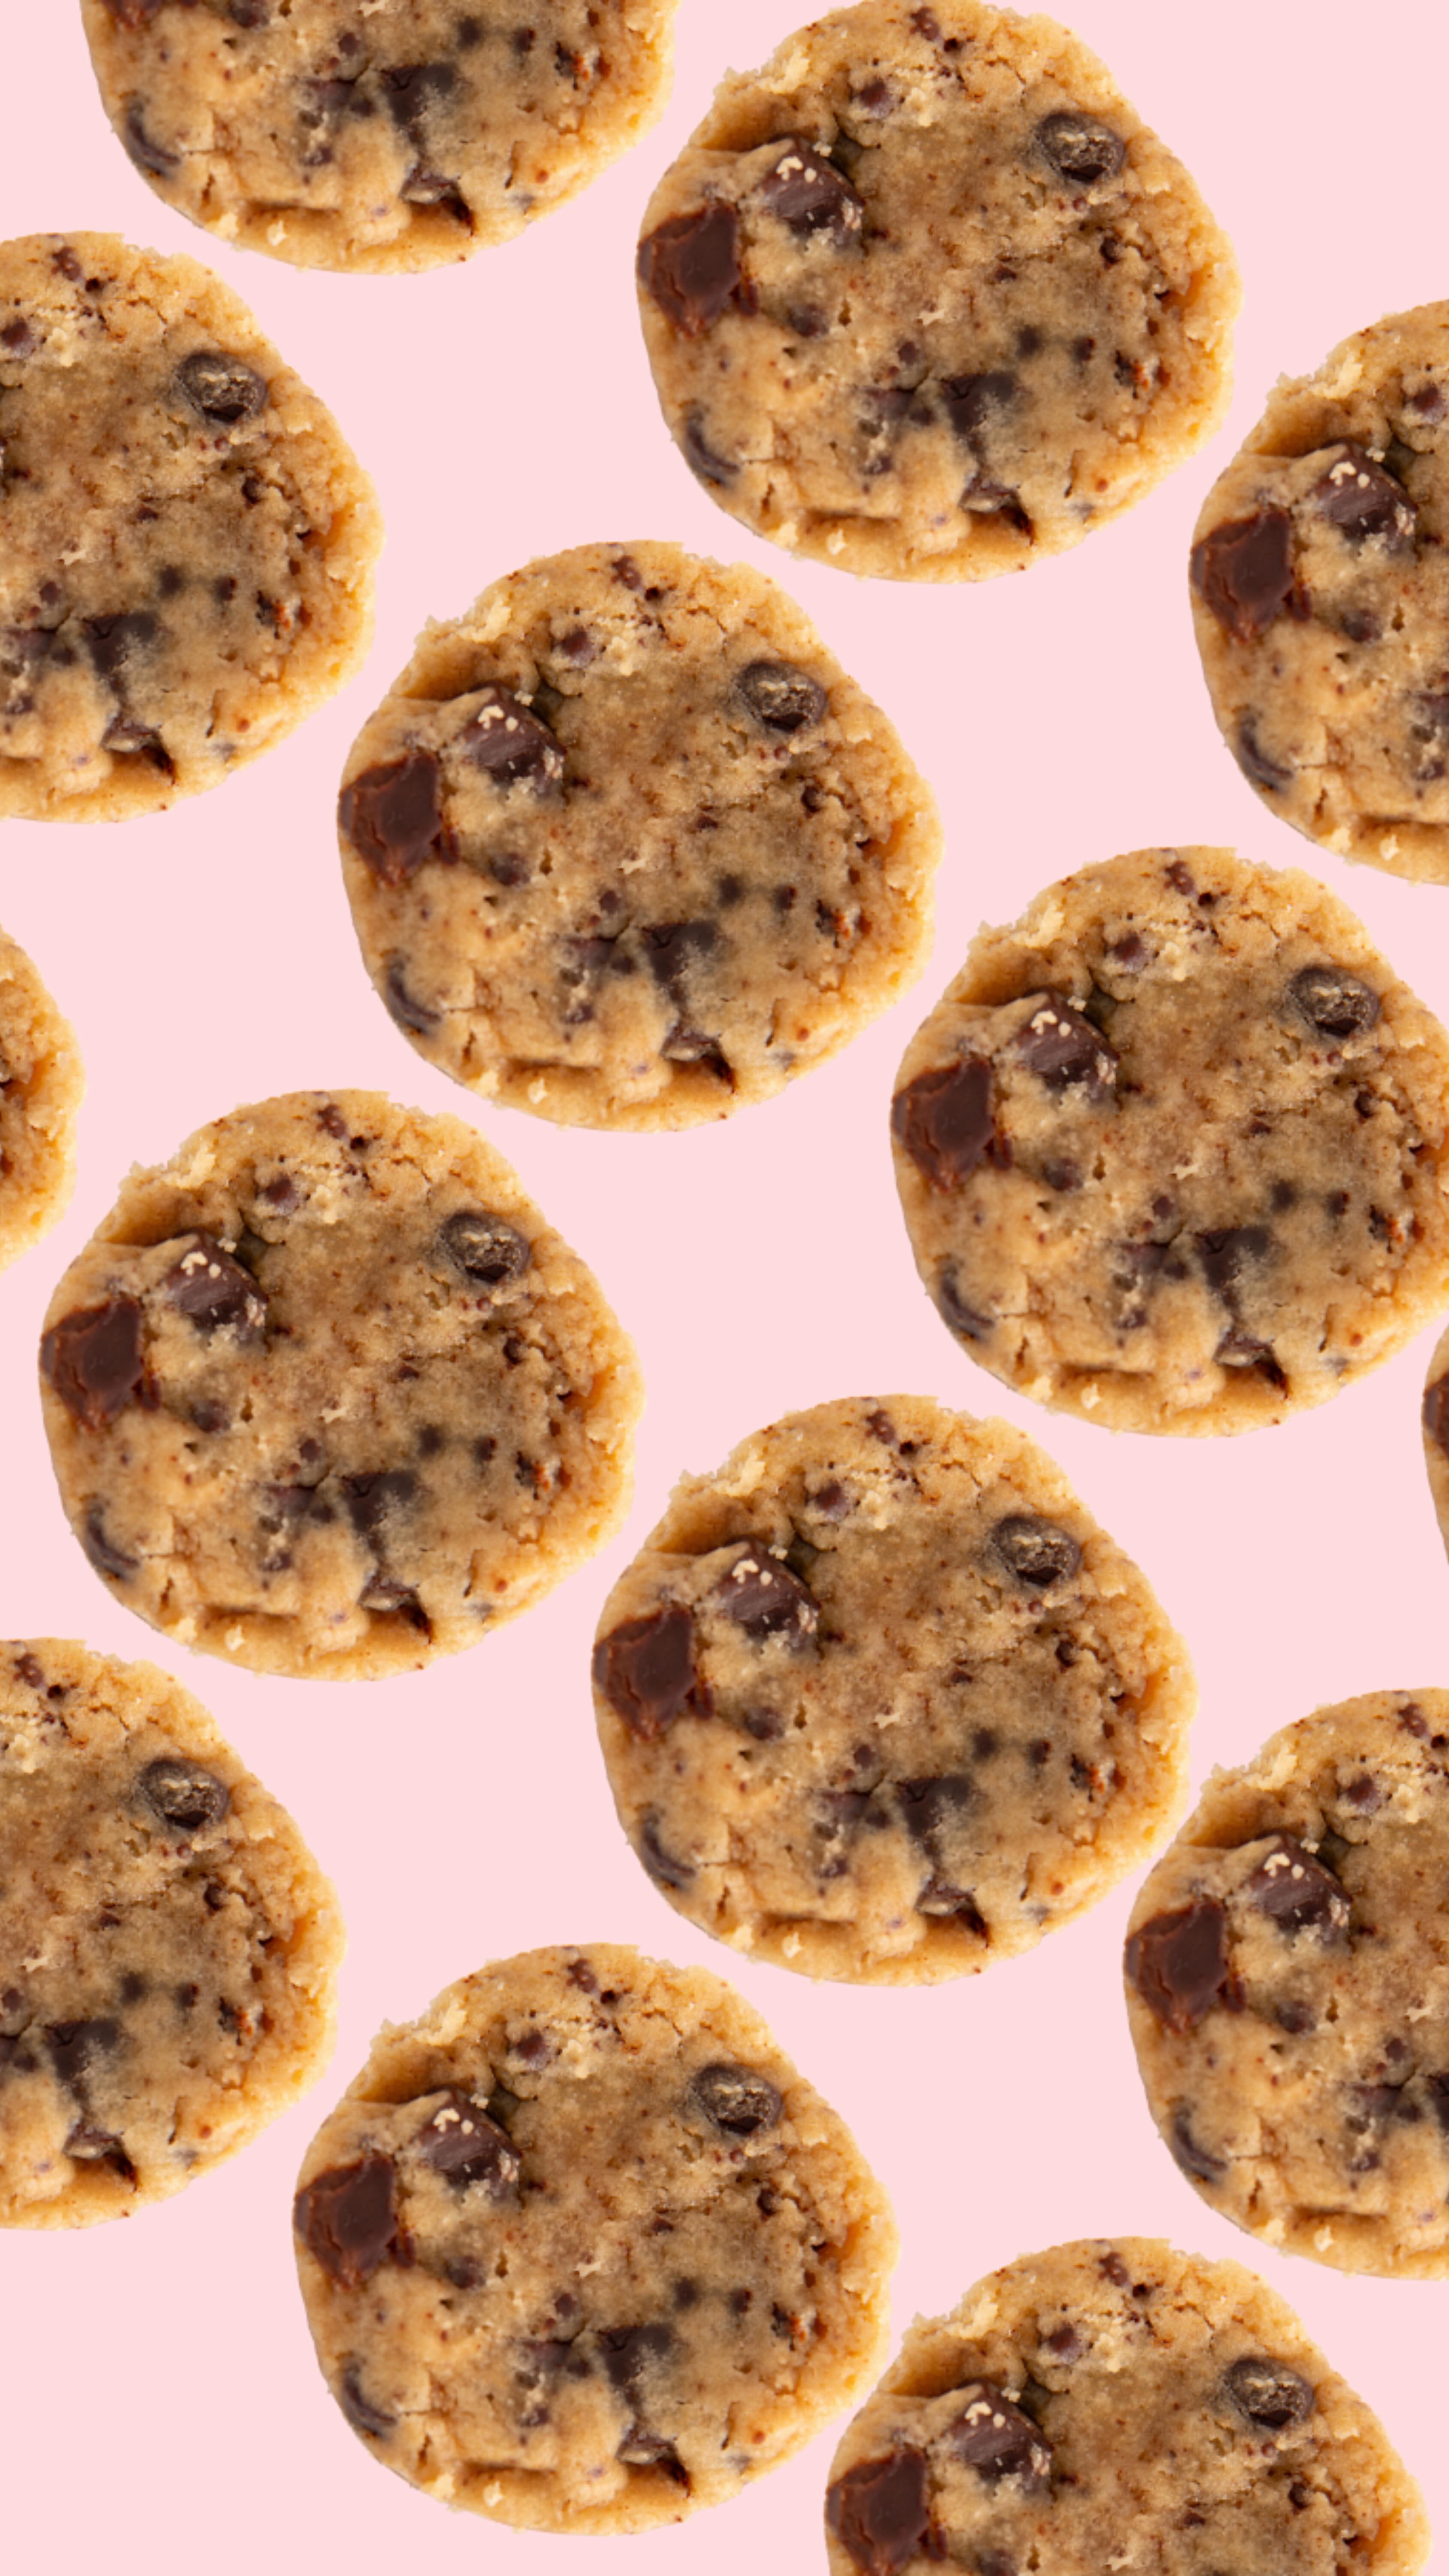 Cet été on laisse l’objectif summer body de coté, on se régale avec nos Cookies Giraudon !

🍪 Faits maison à Gémenos (13)
📍Disponibles dans plusieurs points de vente
💌 Plus d’infos sur notre site web (lien dans notre bio)

#CookiesGiraudon #Bonheur #CookiesAvecAmour #GourmandiseAuthentique #homemadewithlove #CookiesArtisanaux #FaitAvecAmour #Gémenos #CuisineArtisanale #marseille #MadeInFrance